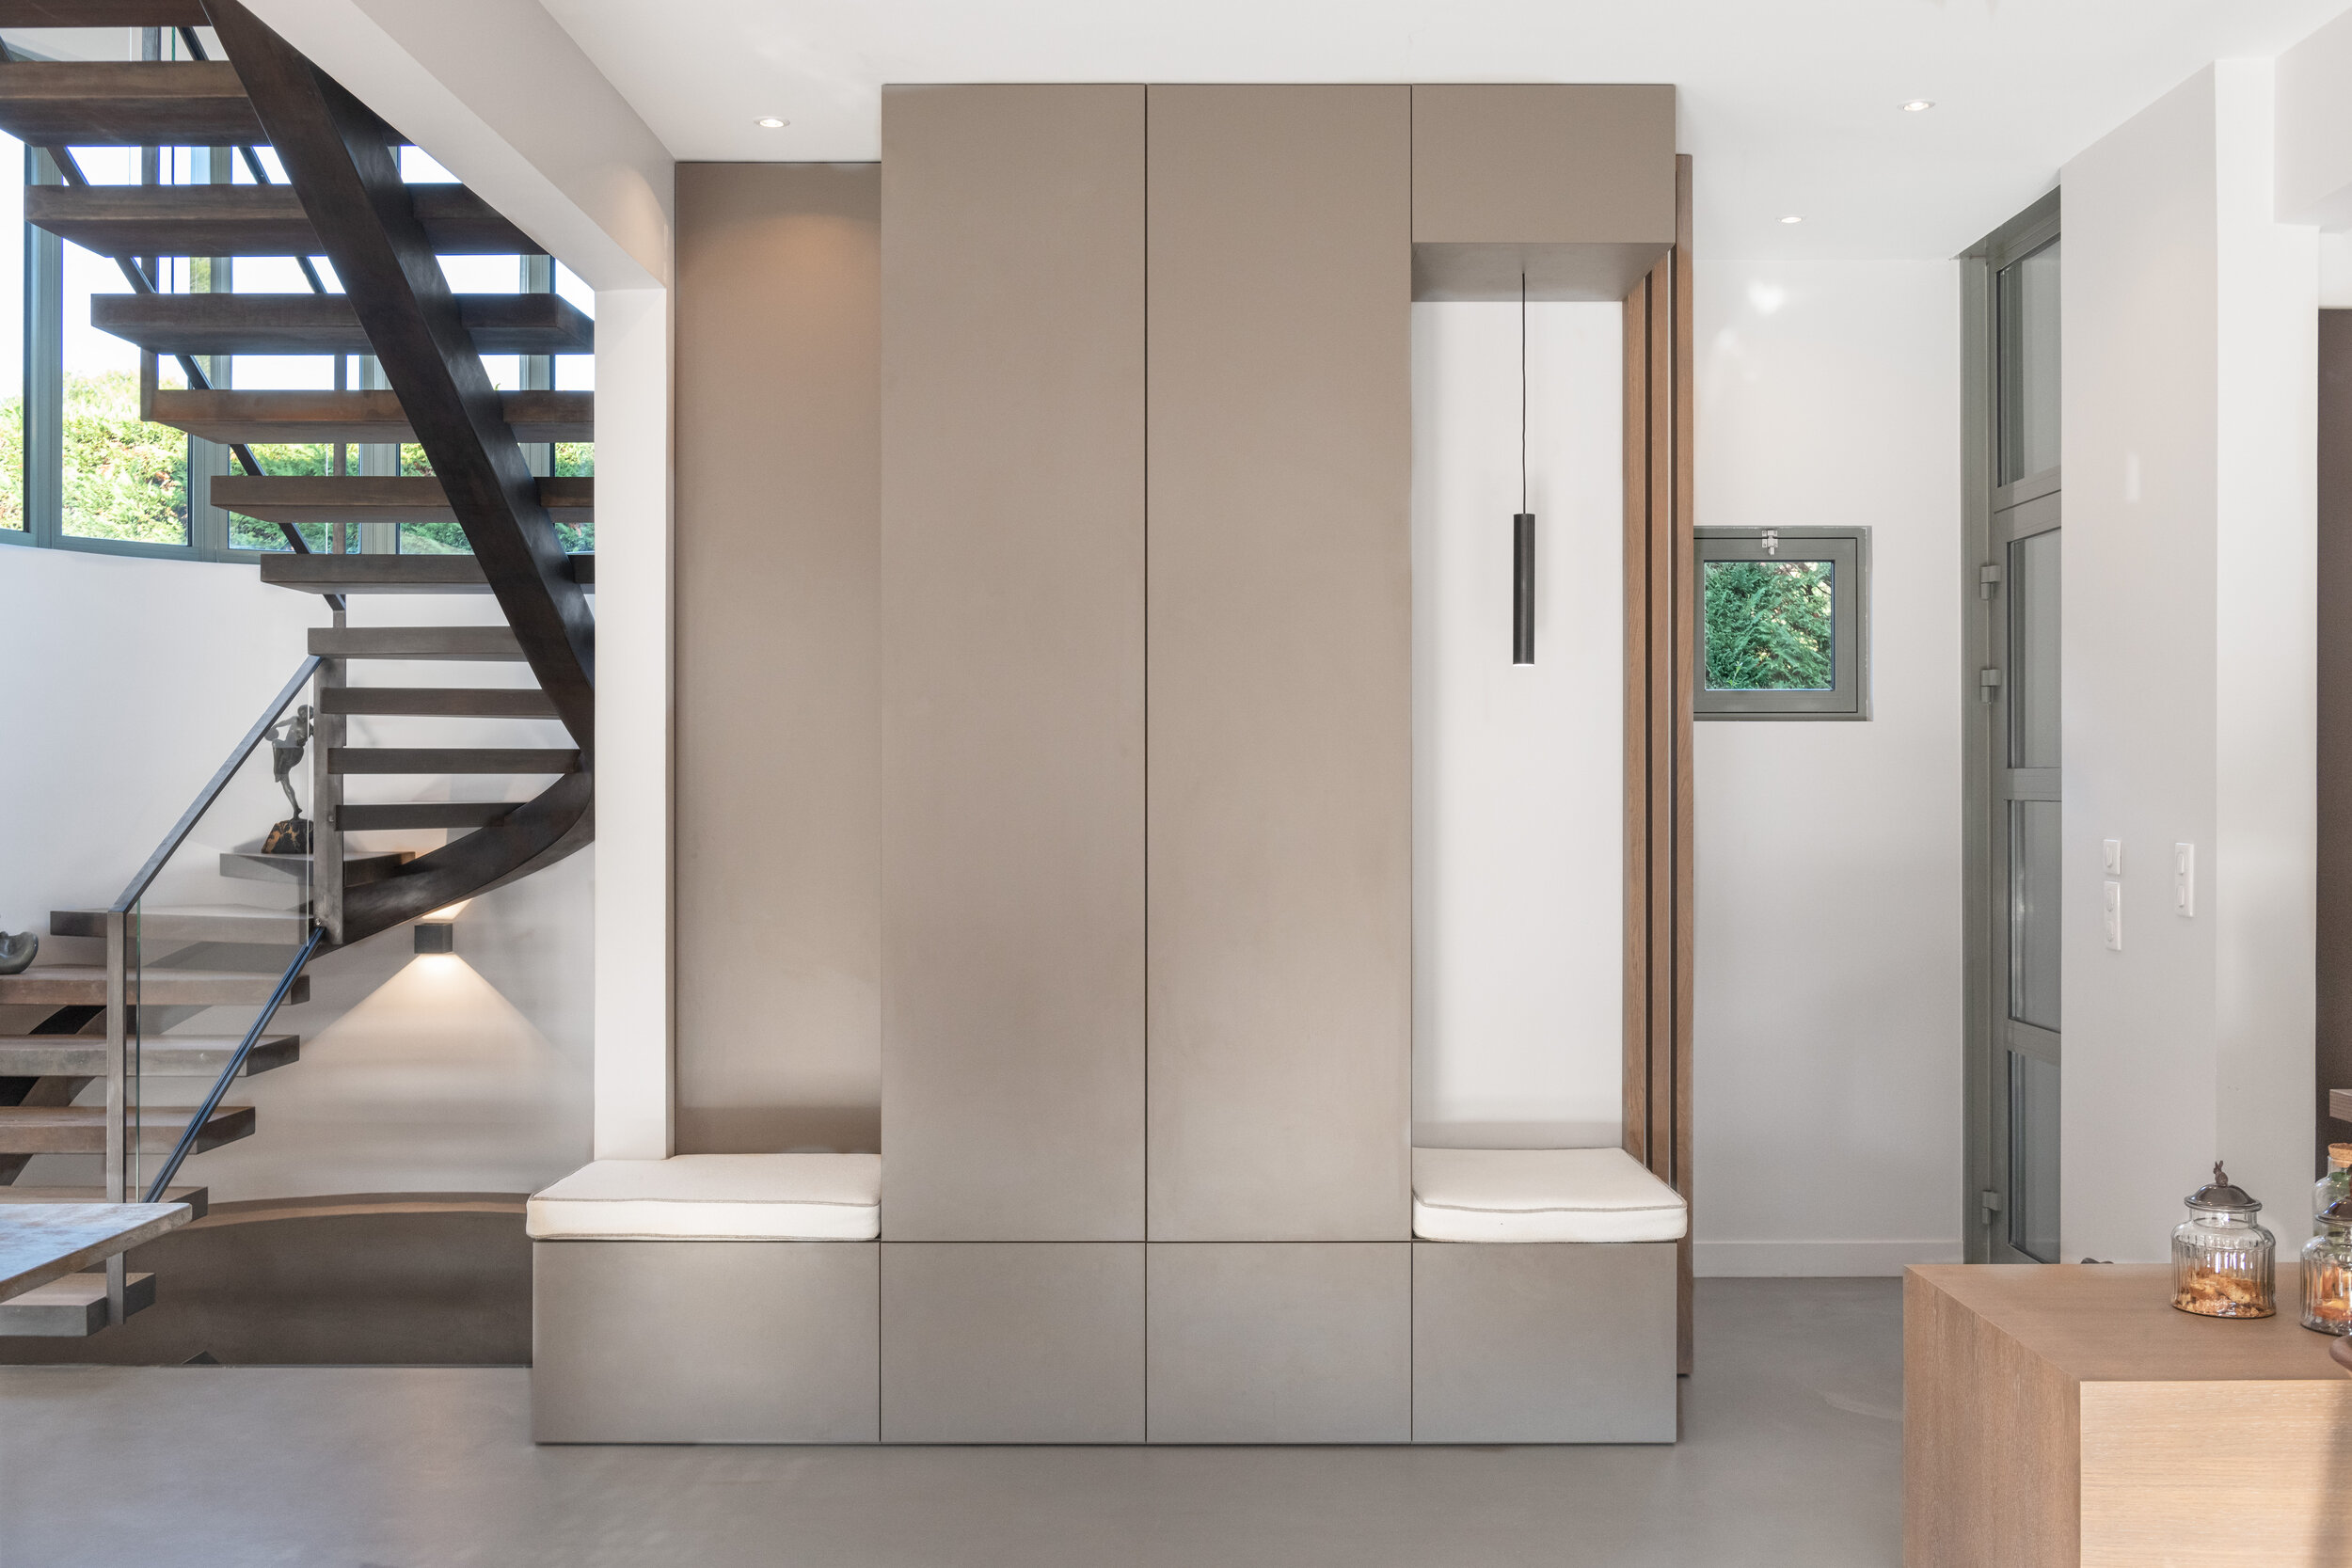 Architecte-interieur-decoration-design-sud-nice-saint-raphael-cannes-maison-contemporaine-entrée-escalier metal.jpg